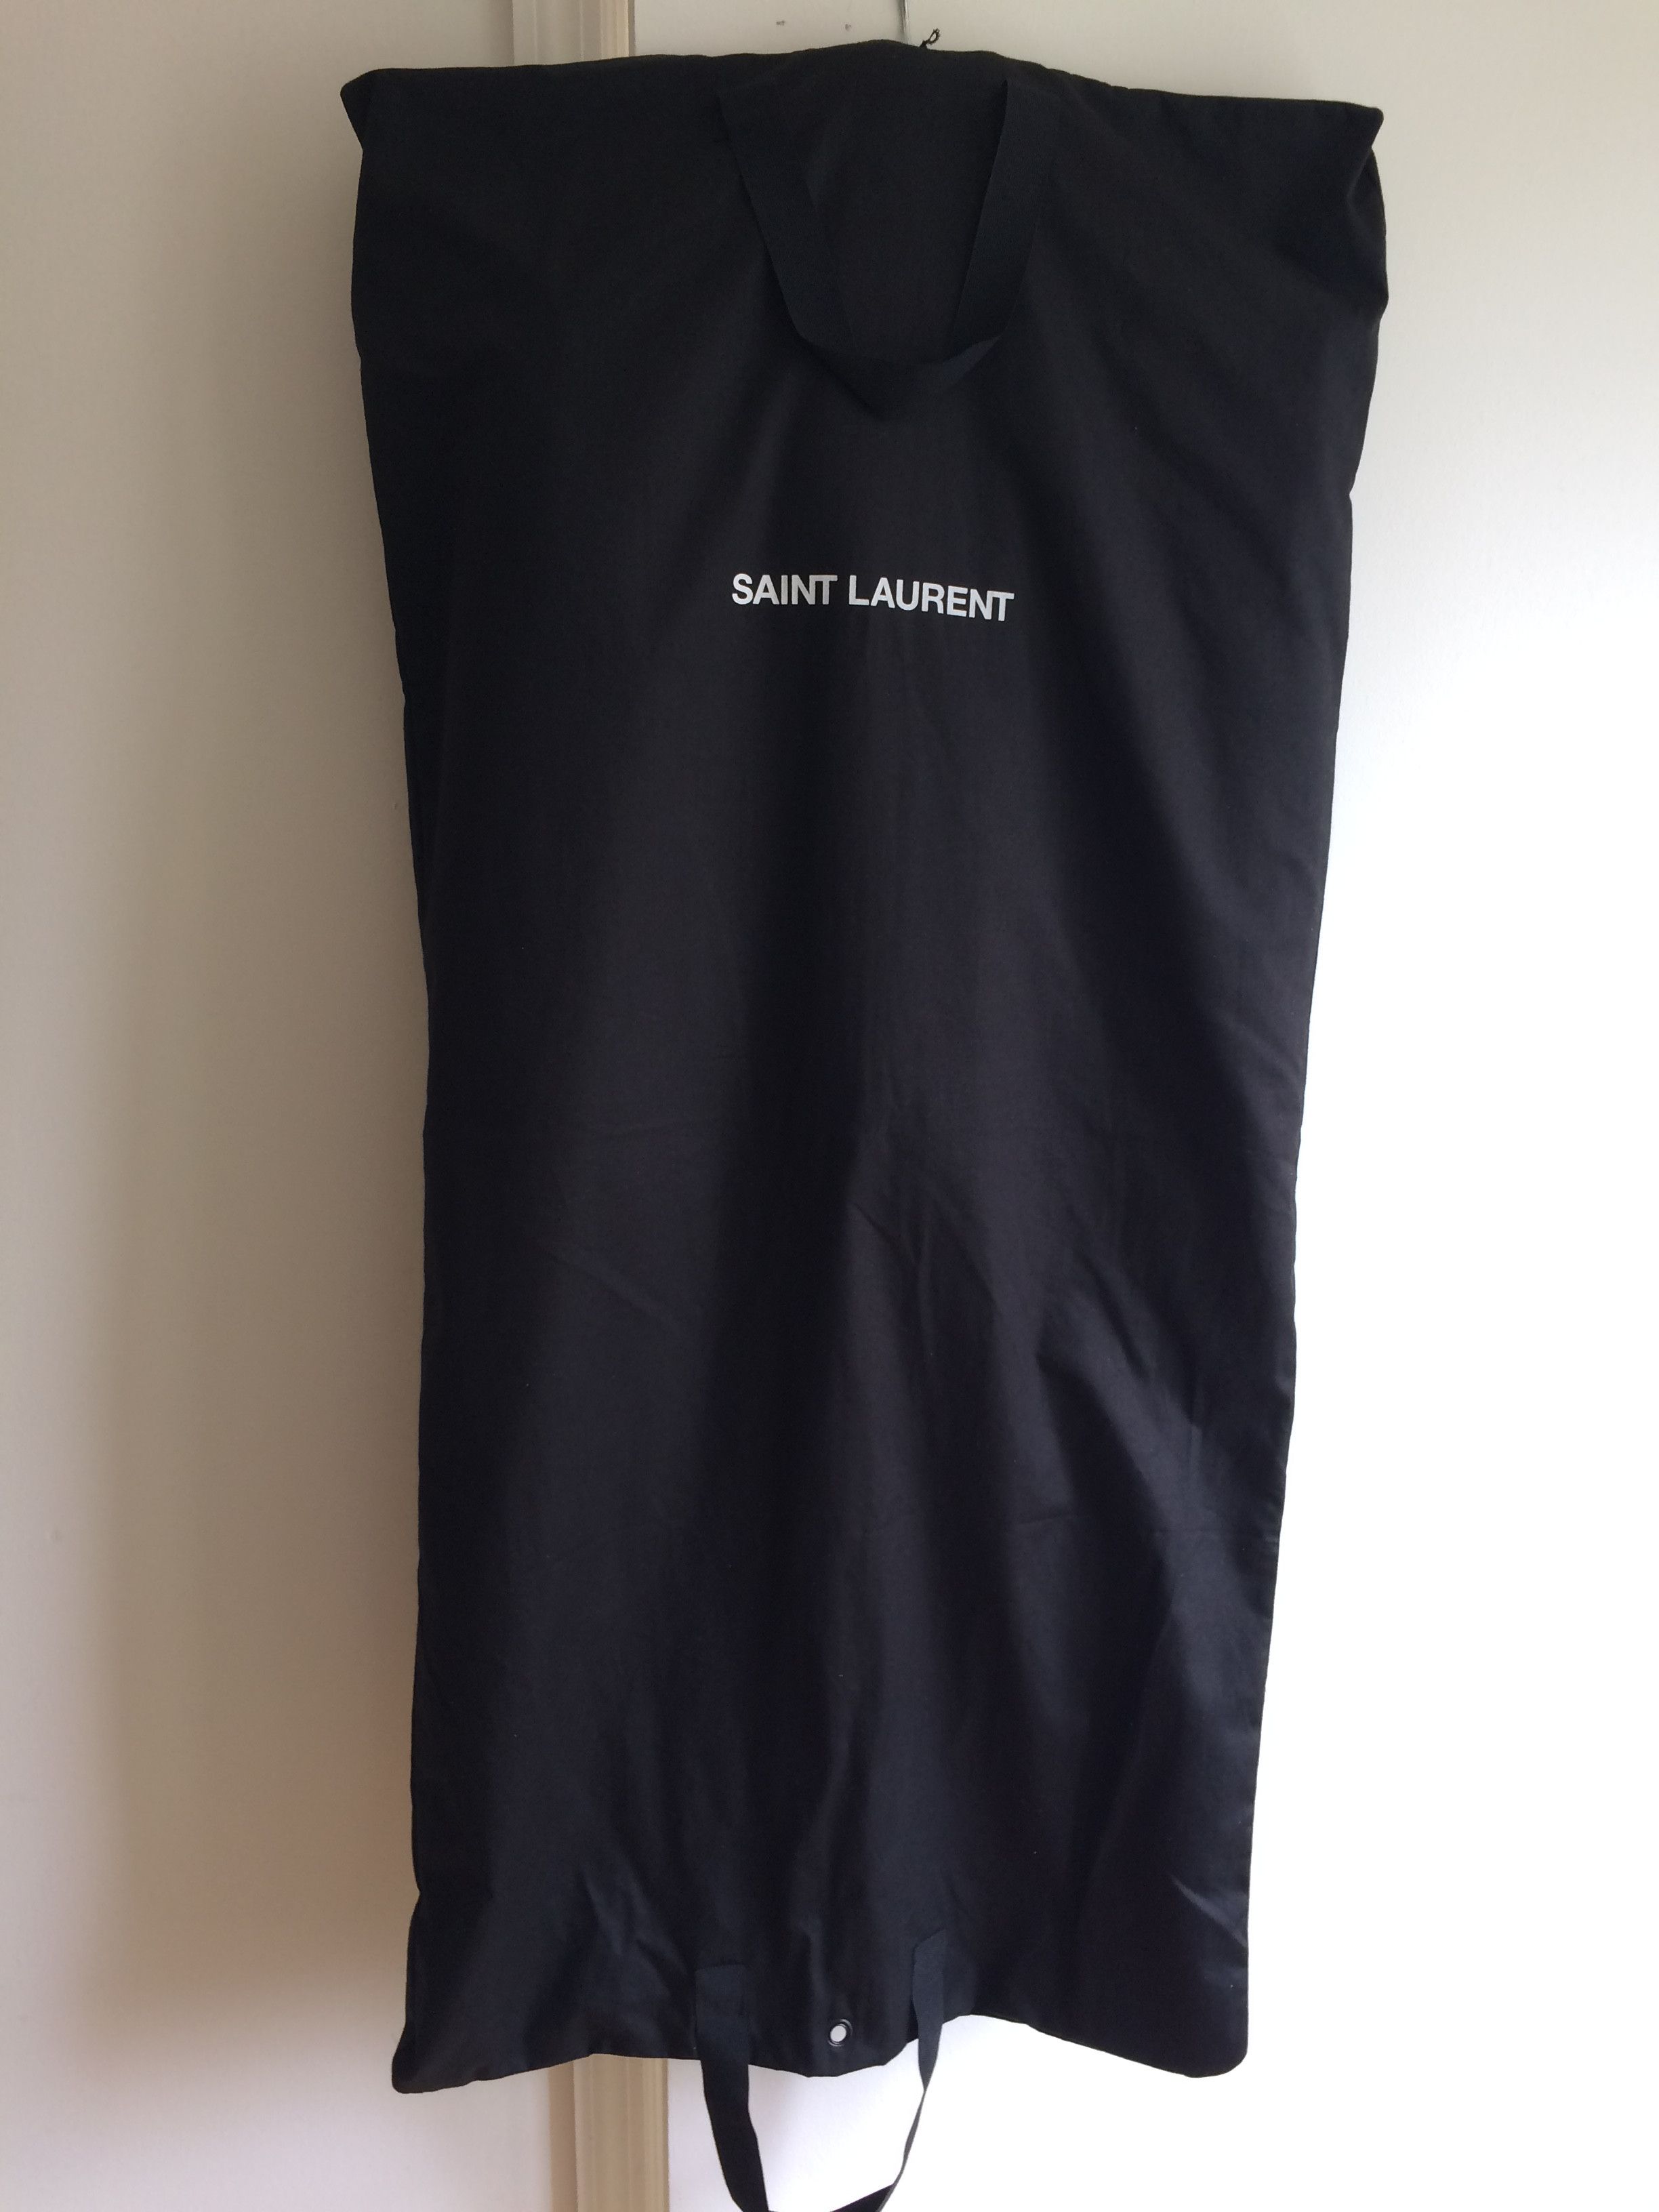 Saint Laurent Paris Saint Laurent Story Varsity Jacket Size US M / EU 48-50 / 2 - 10 Thumbnail